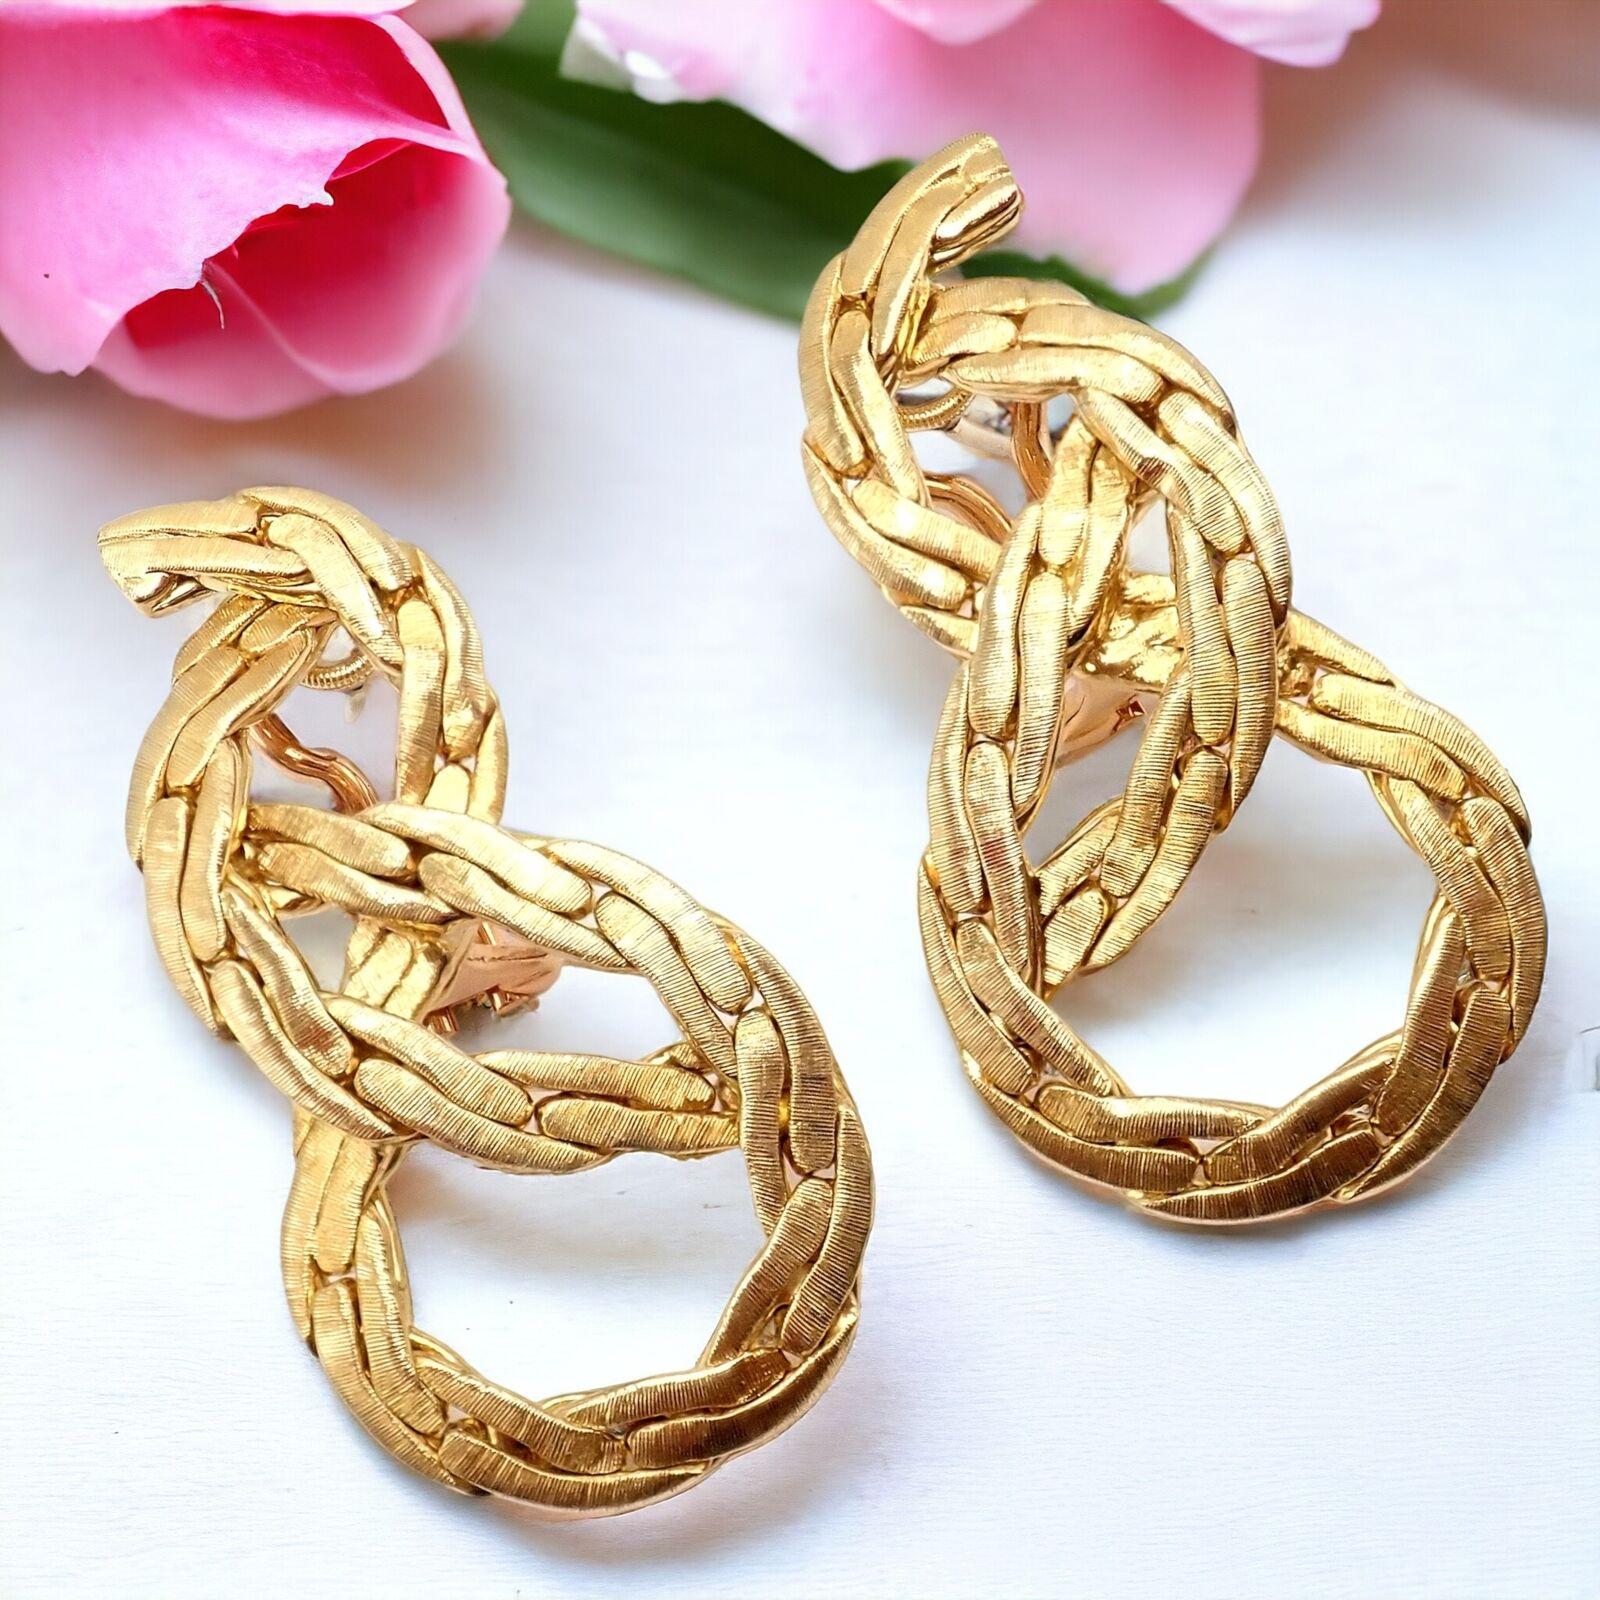 Boucles d'oreilles pendantes en or jaune 18 carats de Buccellati.
Ces authentiques boucles d'oreilles vintage Buccellati sont une représentation étonnante de l'élégance classique et de l'excellence artisanale. 
Réalisées en or jaune 18 carats, elles